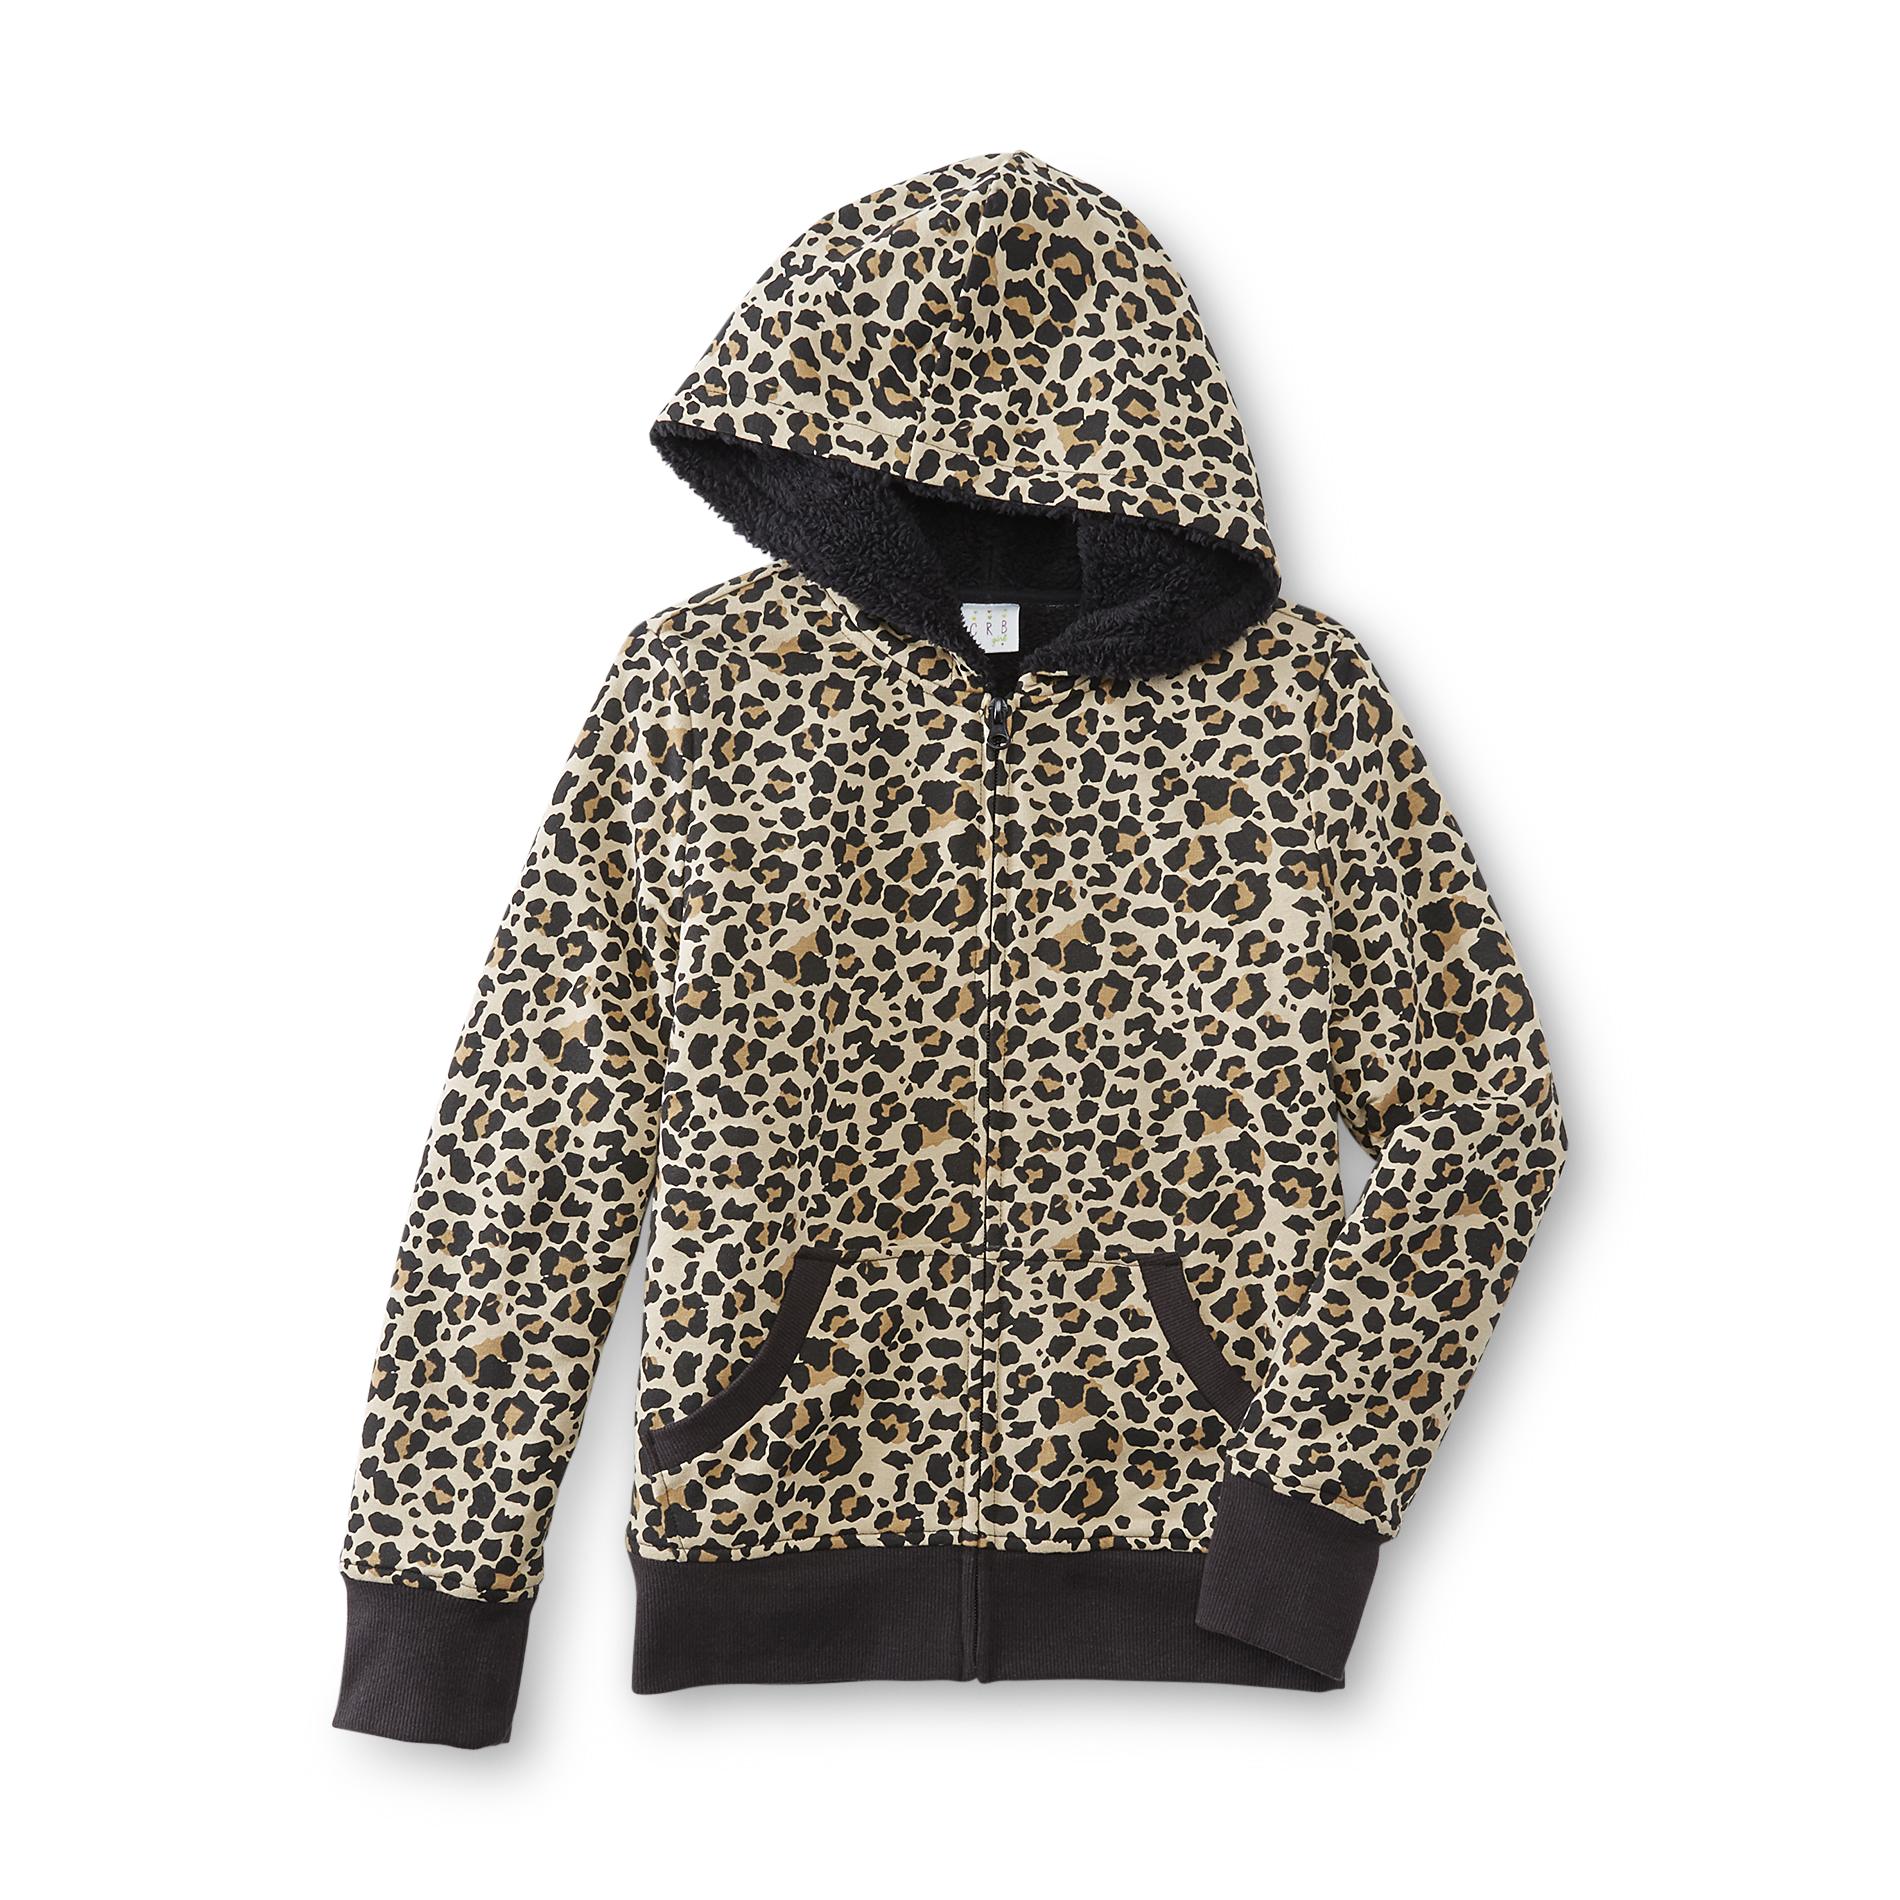 CRB Girl Girl's Hoodie Jacket - Leopard Print